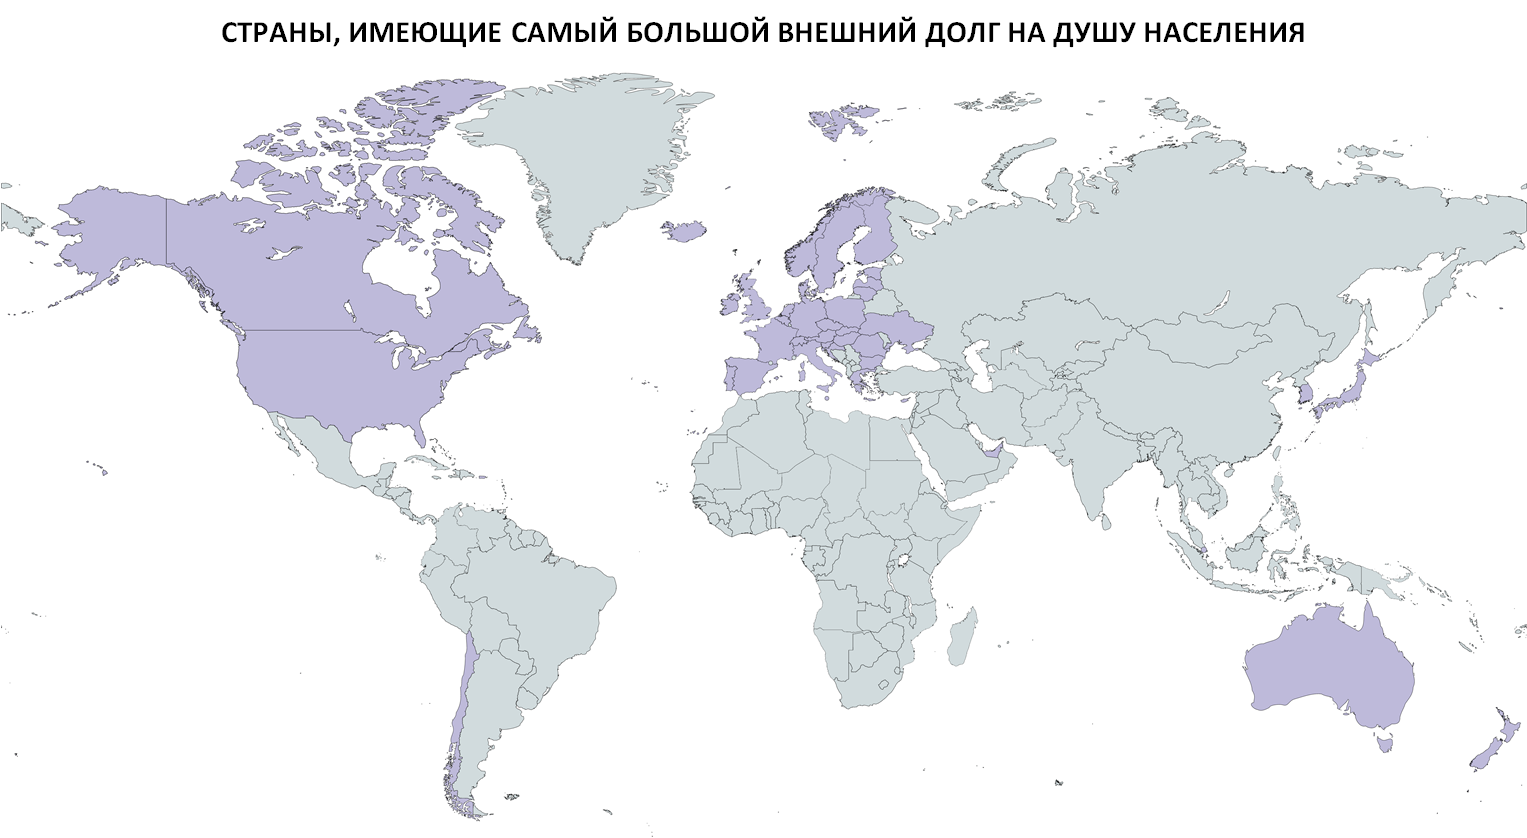 Карта стран в которых был. Карта стран которые ввели санкции против РФ. Страны которые ввели санкции против Беларуси карта. Карта стран которые ввели санкции против РФ 2022.